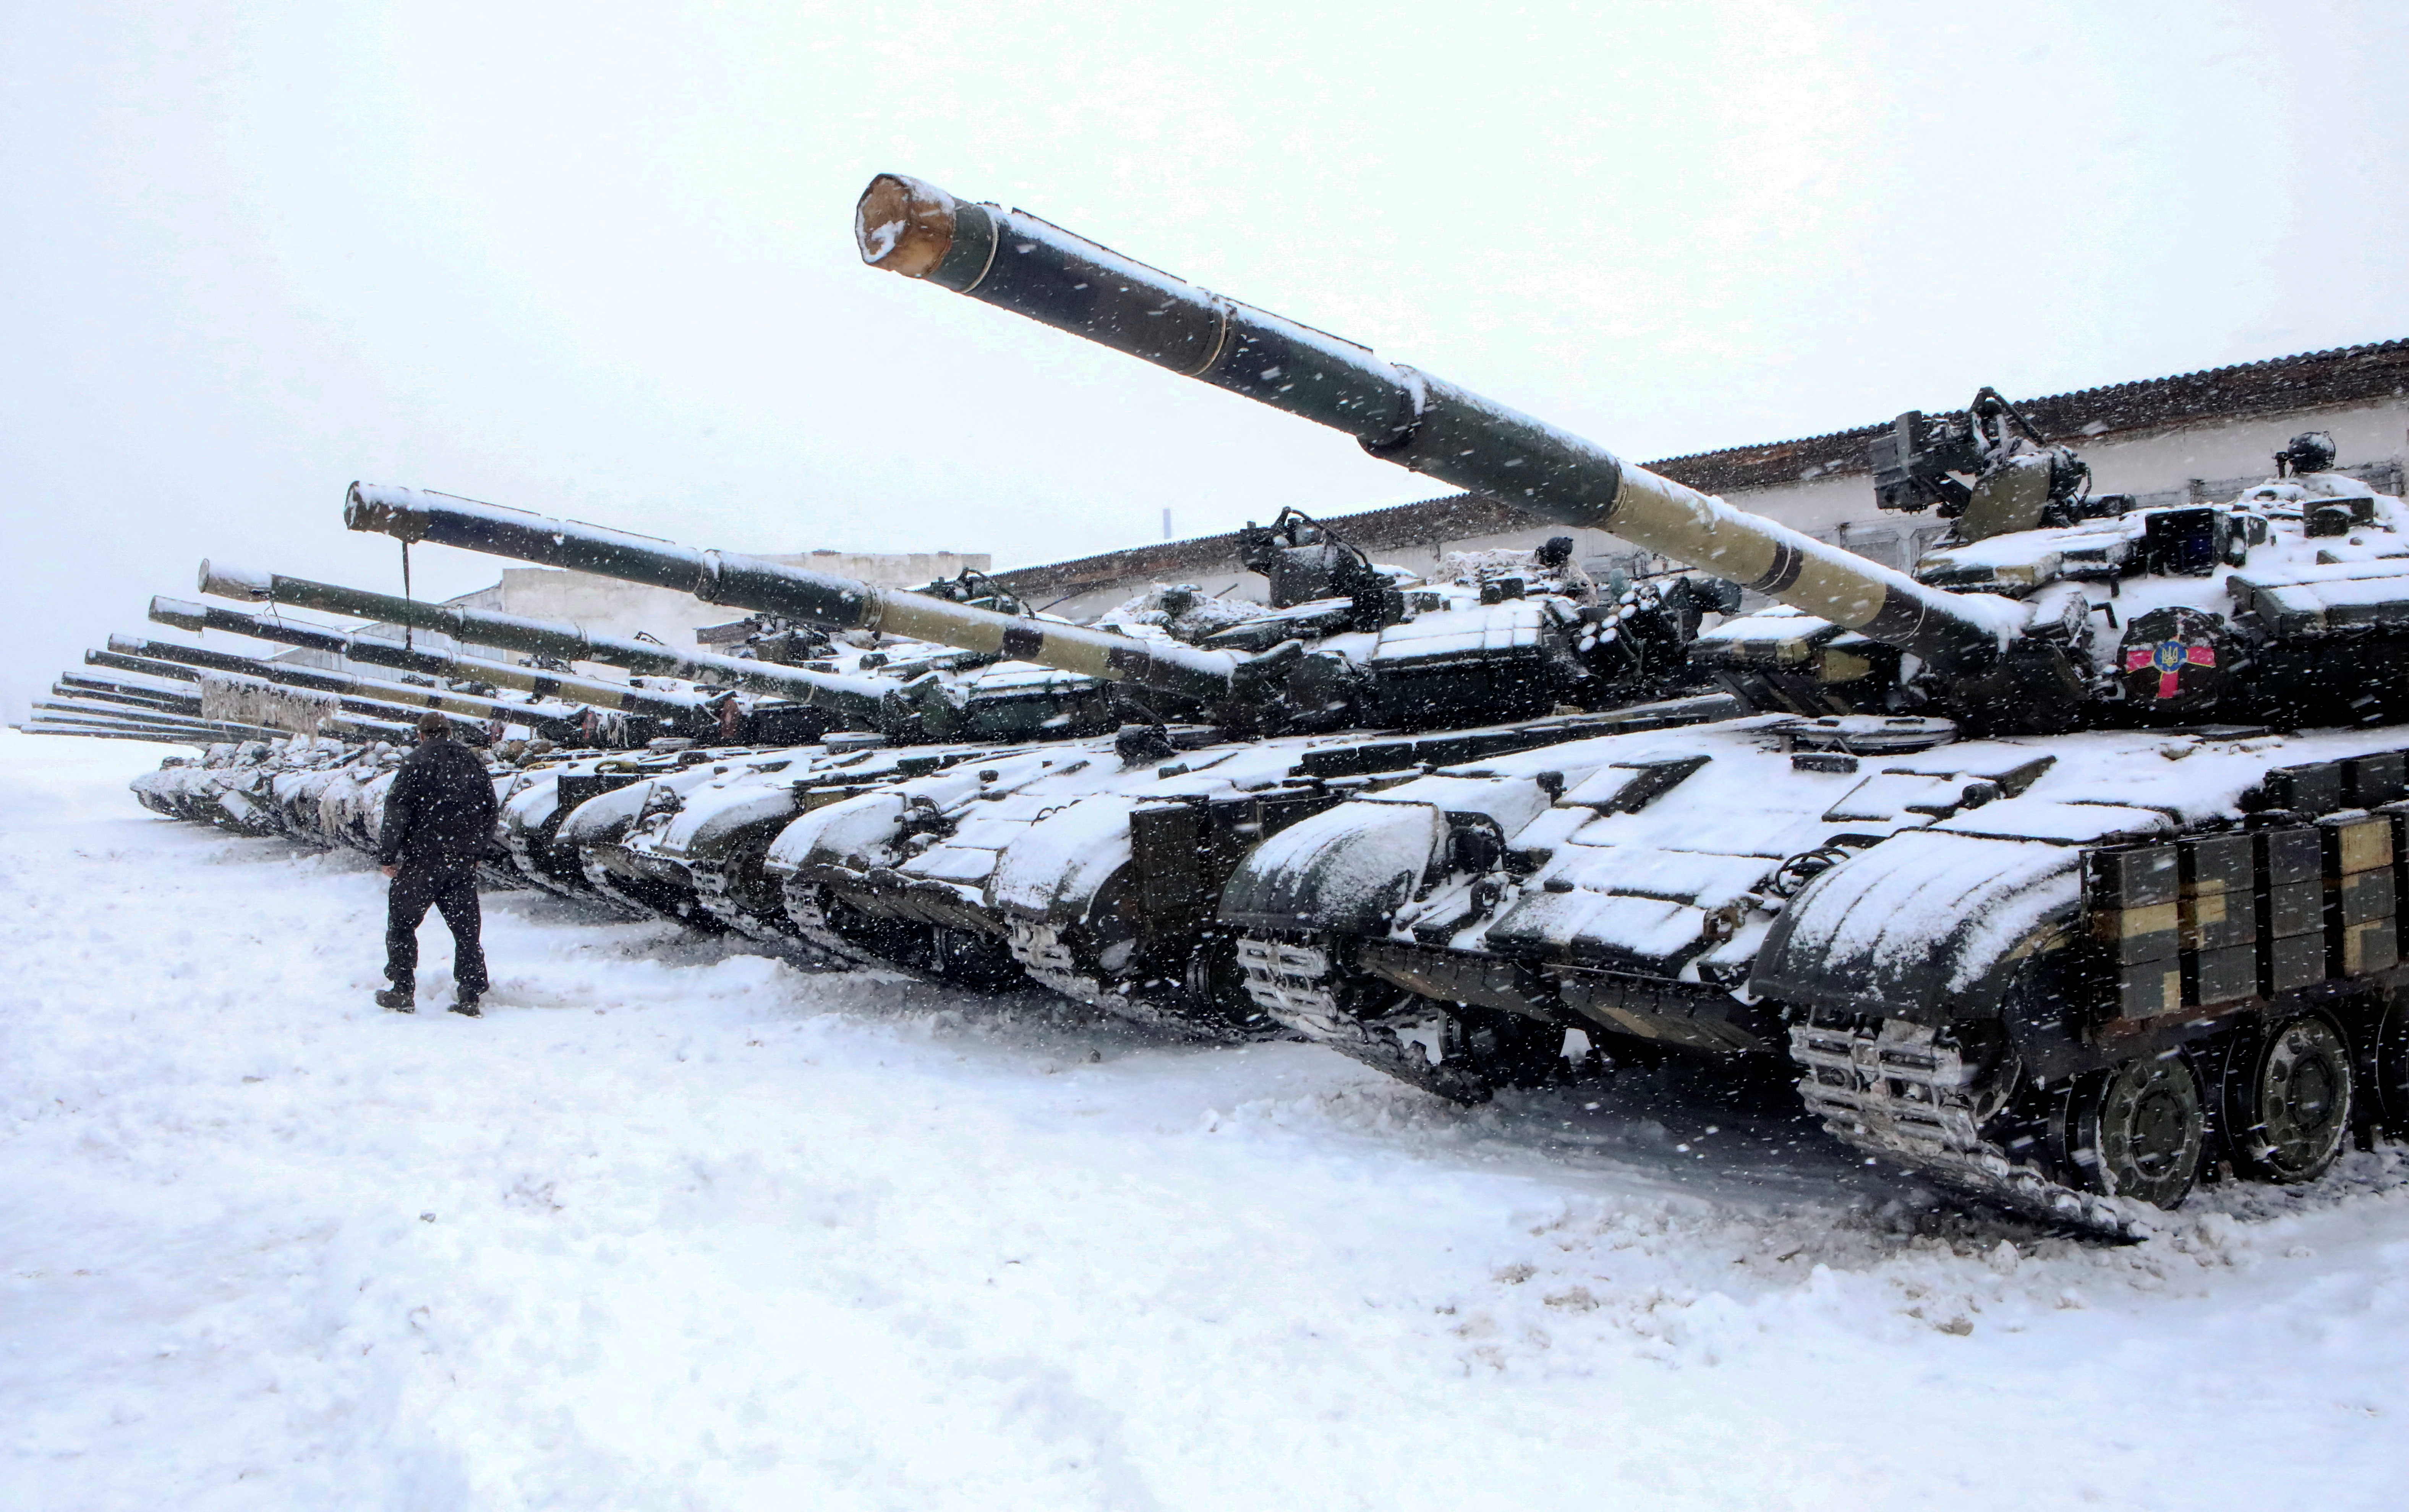 31 Ocak 2022, Ukrayna, Kharkiv dışındaki askeri tatbikatlar sırasında bir asker, Ukrayna Silahlı Kuvvetlerinin mekanize tugayının tanklarının yanından geçiyor. REUTERS/Vyacheslav Madiyevskyy